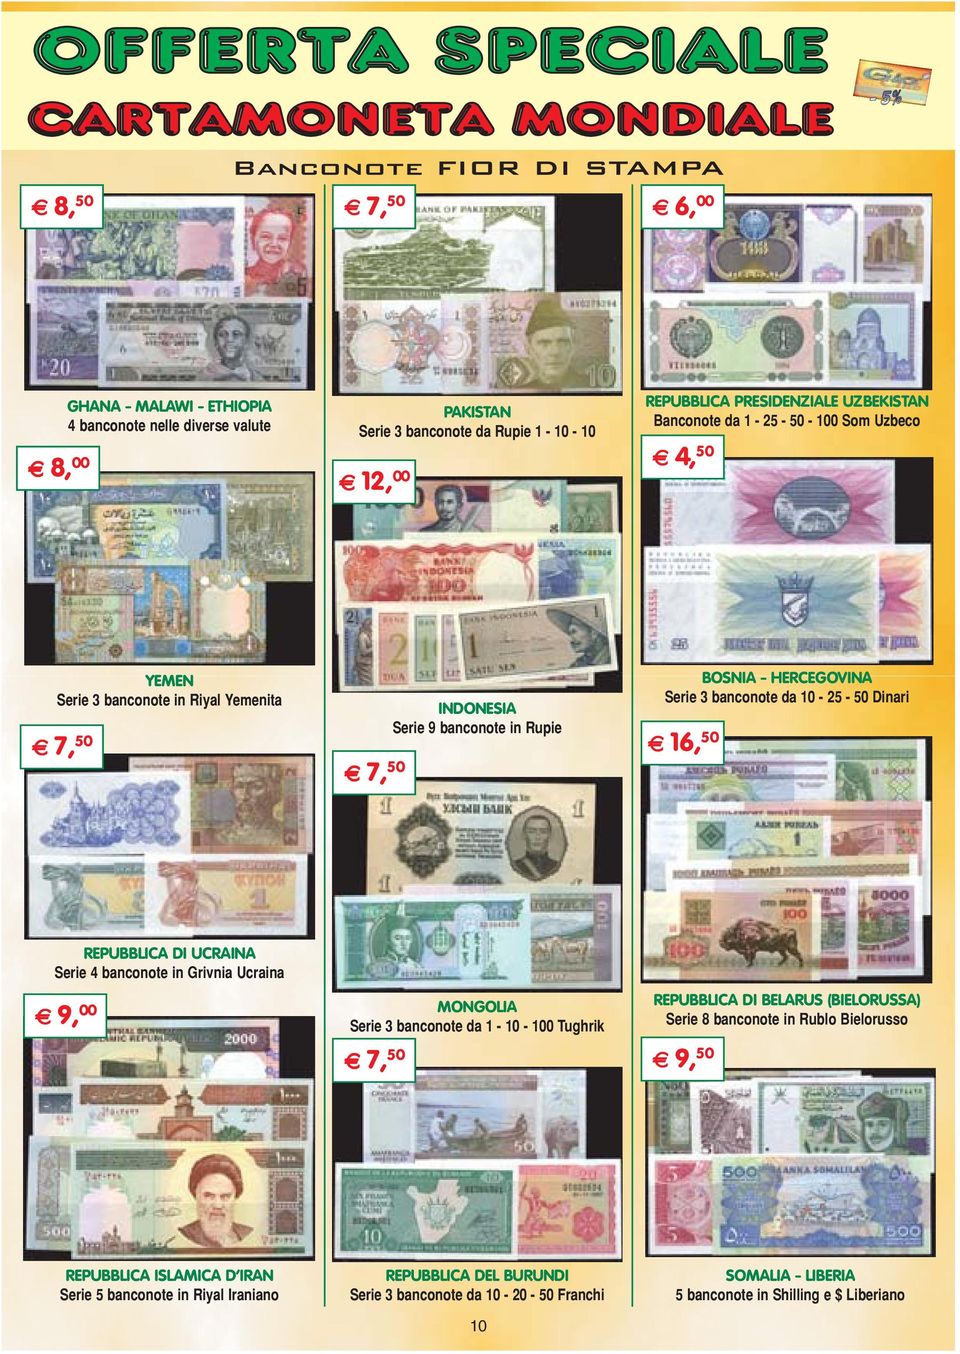 50 REPUBBLICA DI UCRAINA Serie 4 banconote in Grivnia Ucraina E 9, 00 MONGOLIA Serie 3 banconote da 1-10 - 100 Tughrik E 7, 50 REPUBBLICA DI BELARUS (BIELORUSSA) Serie 8 banconote in Rublo